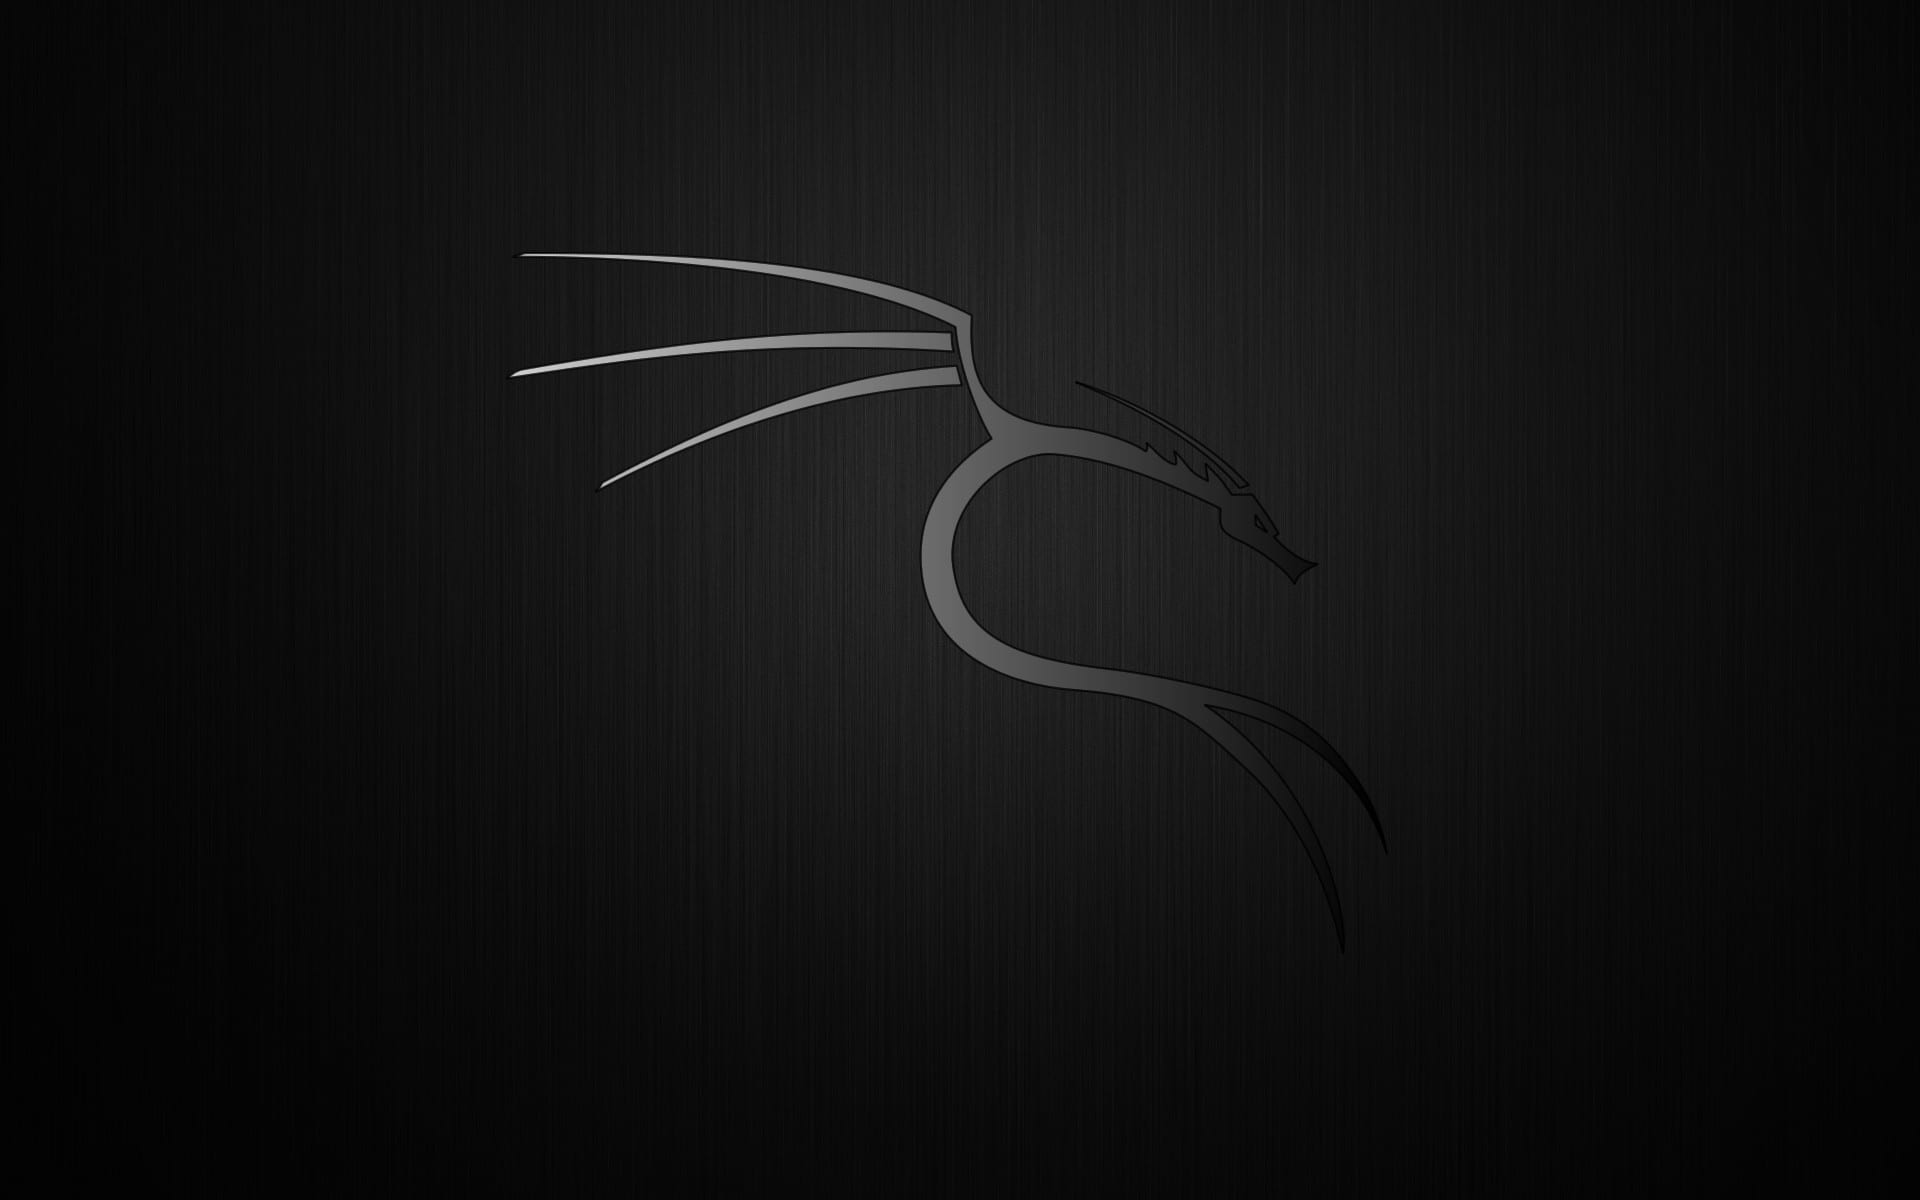 kali linux download for windows 10